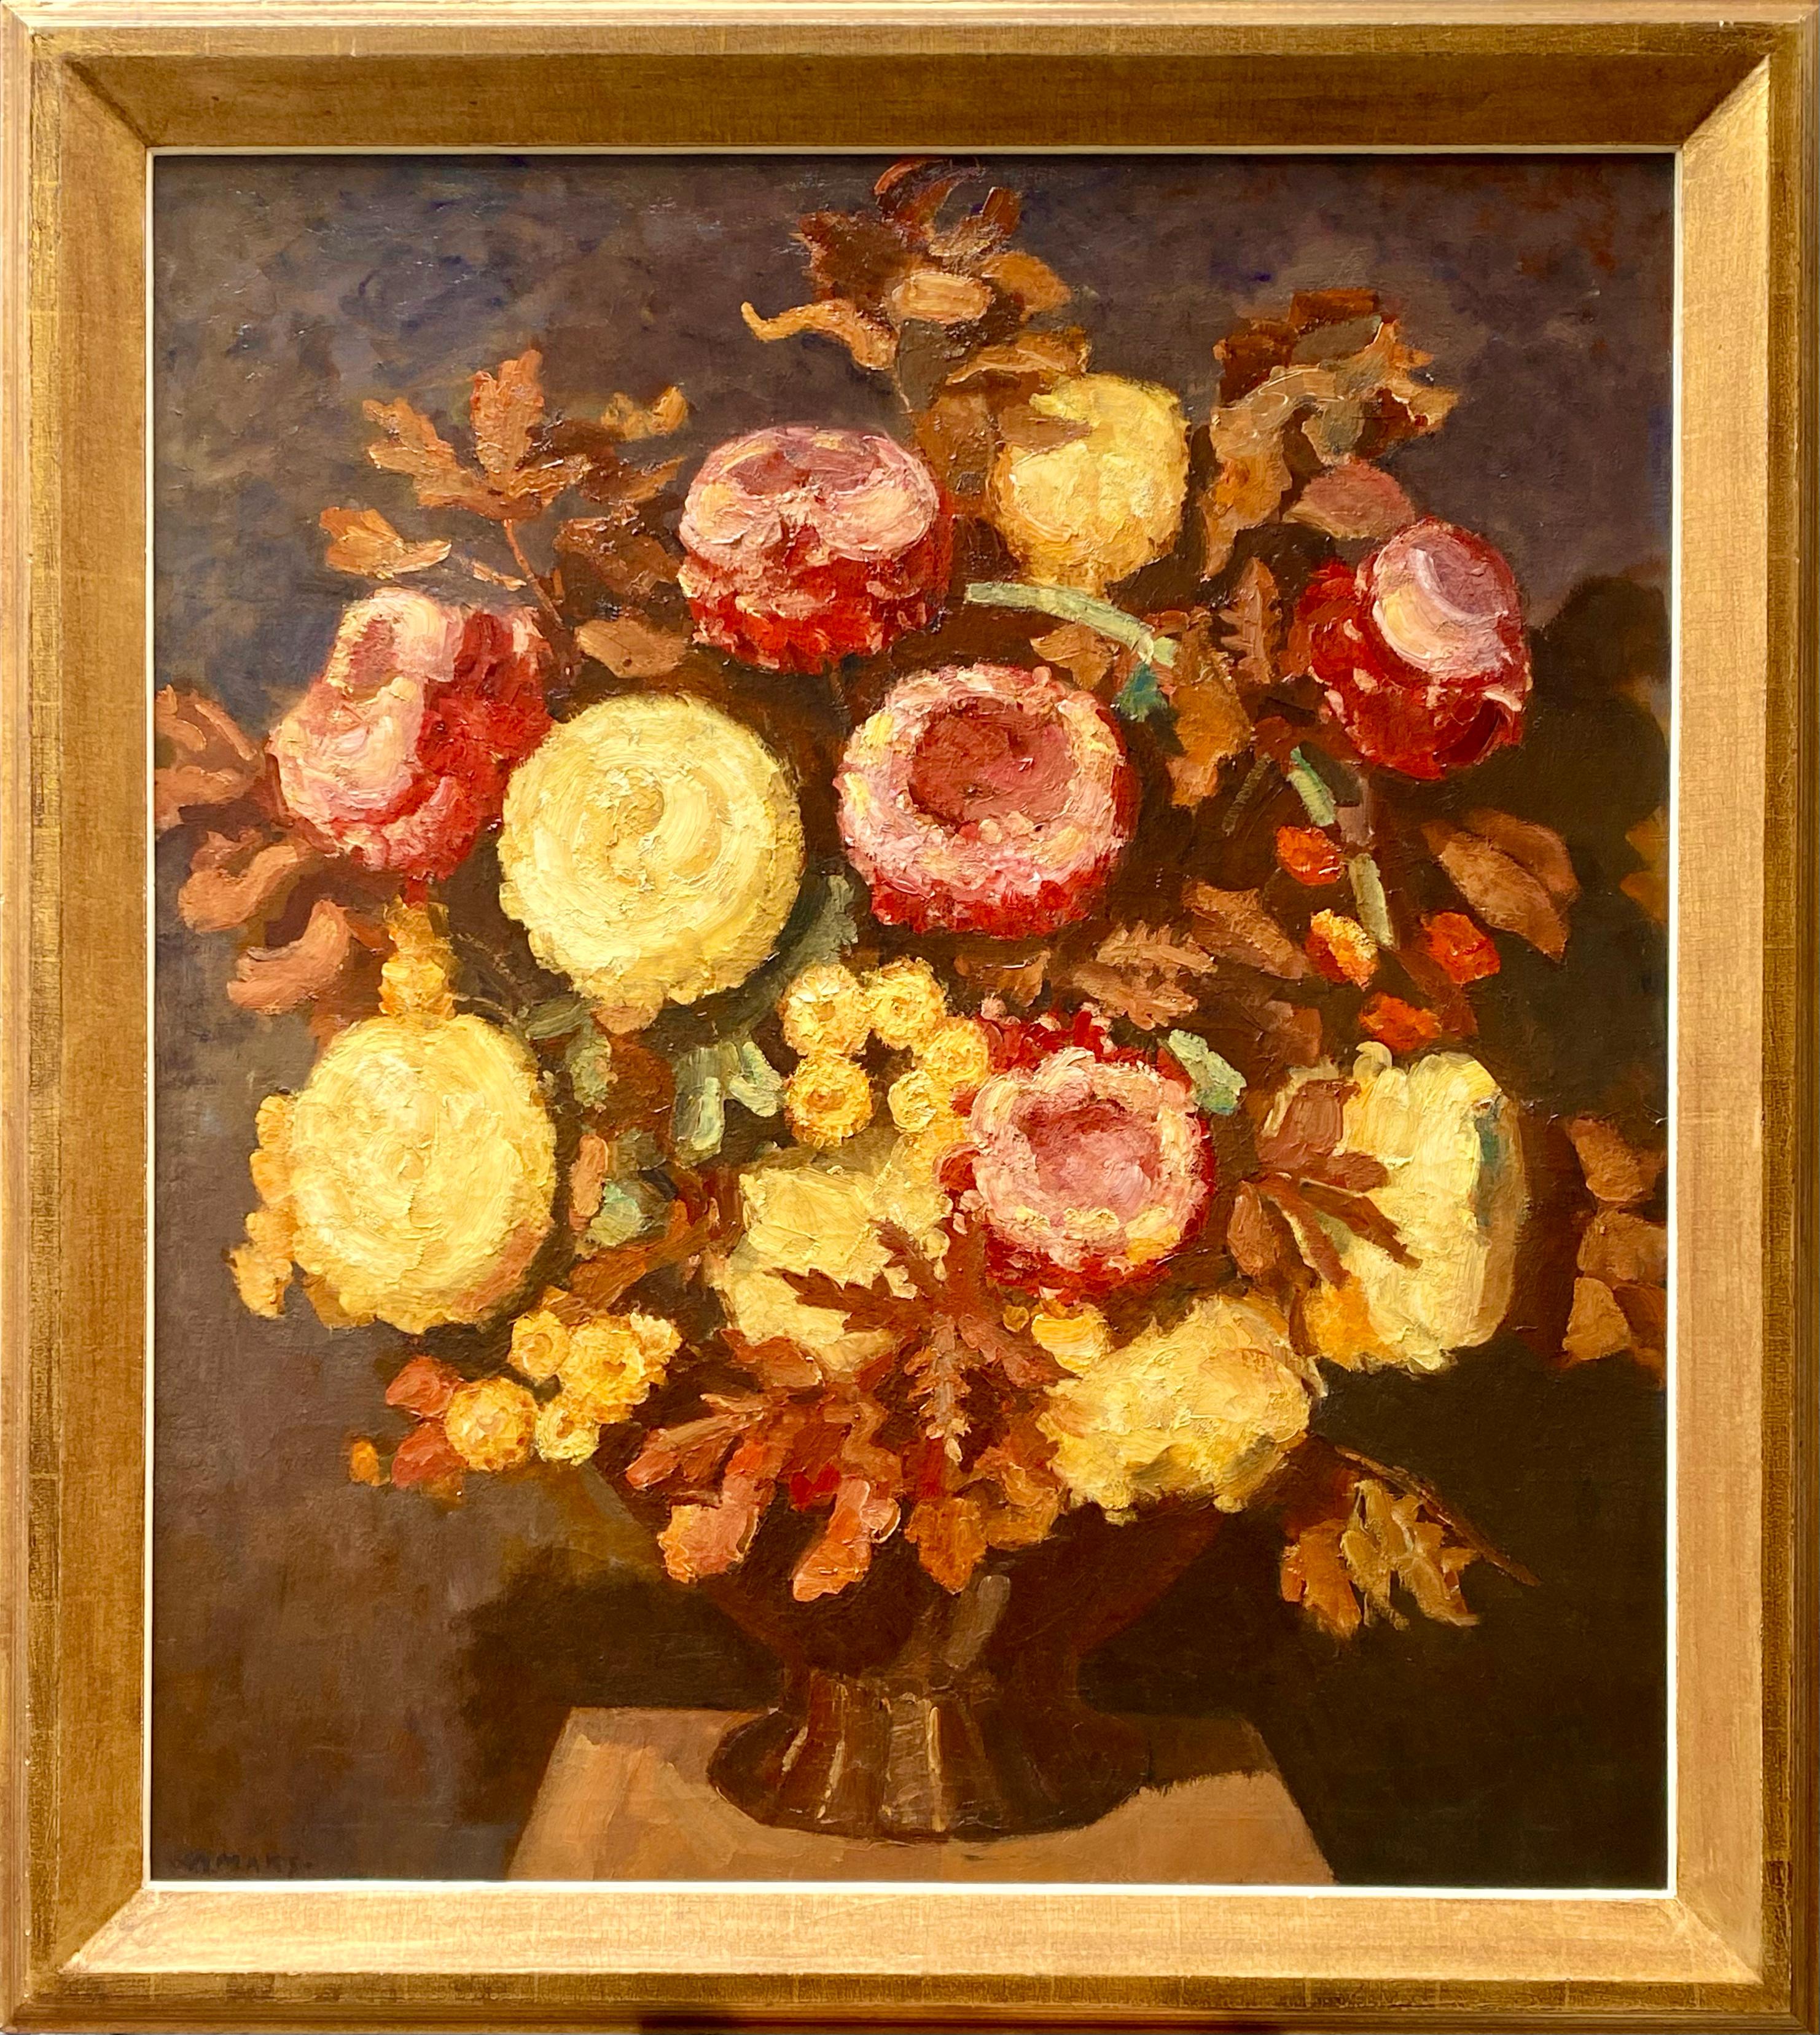 Chrysantheme in einer Vase" von Kees Maks, Amsterdam 1876 - 1967, niederländischer Maler